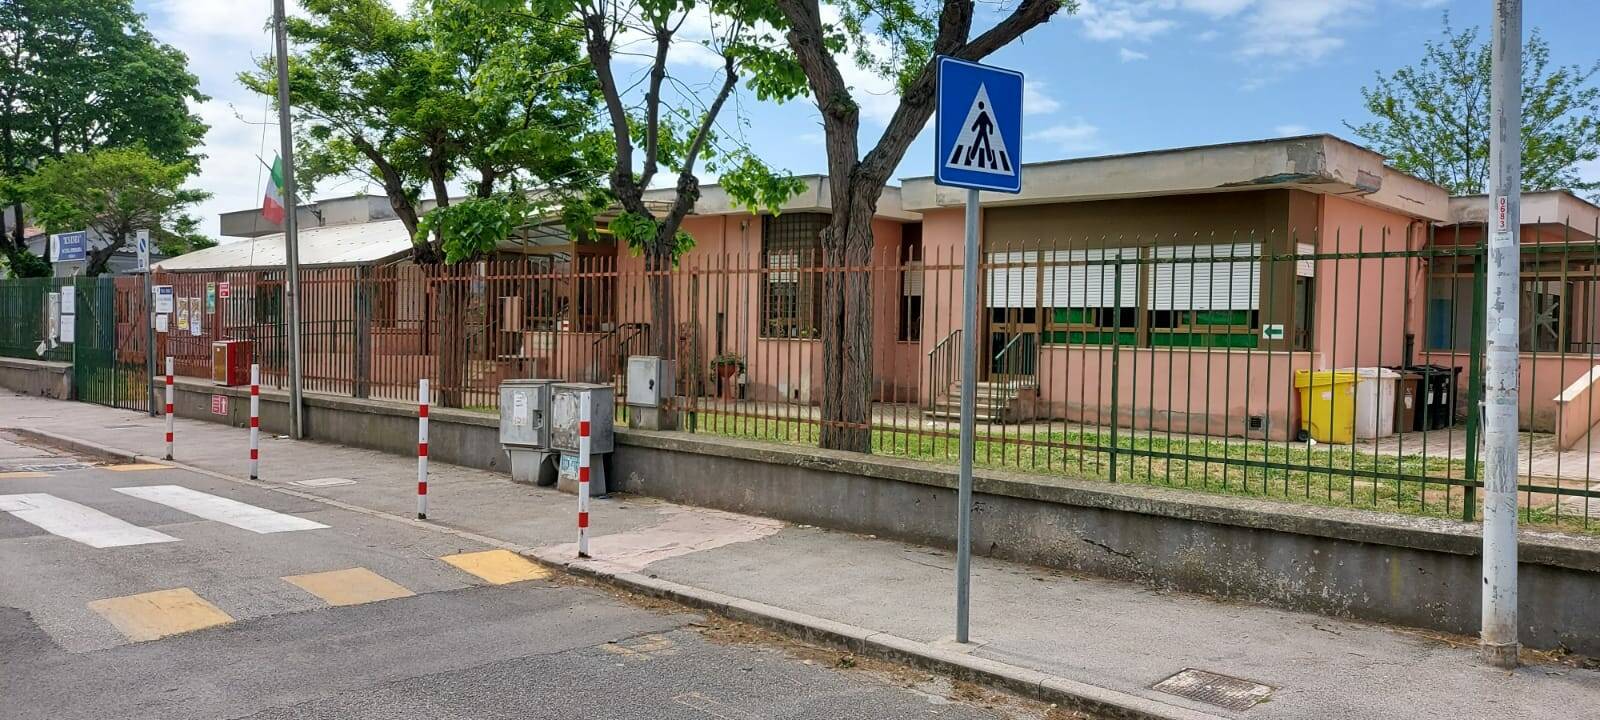 Pomezia, finanziati 4 milioni di euro per la scuola primaria di via Torralba a Martin Pescatore